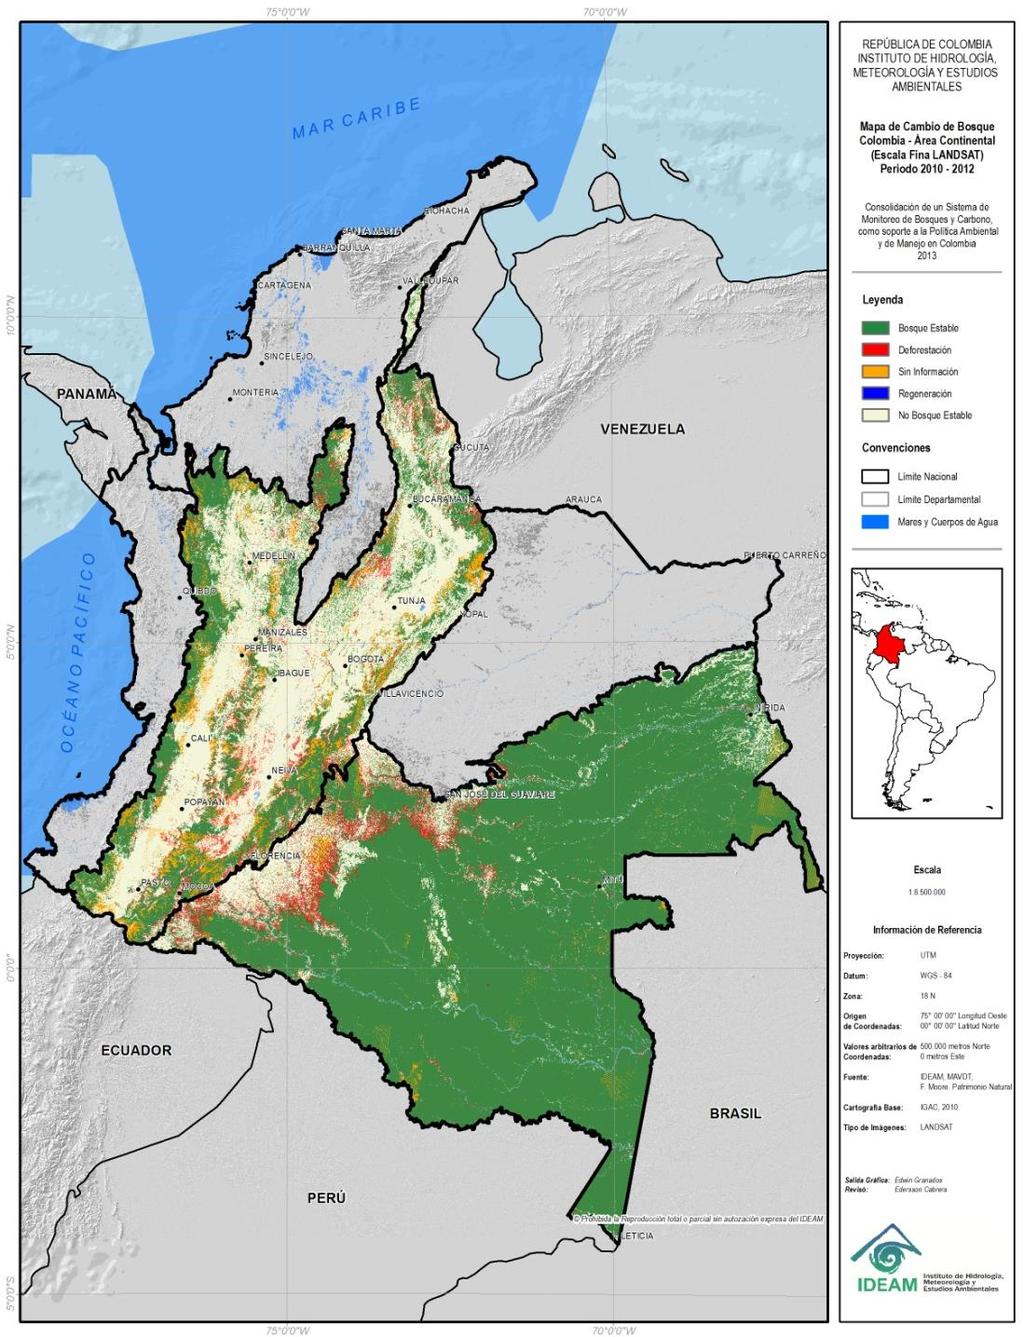 Superficie Deforestada Regiones Naturales Años 2011-2012 Área Deforestada 2011-2012 (ha) % Nacional Área Deforestación anual 2011-2012 Deforestació n anual 2005-2010 Caribe 35.689 12 17.844 40.